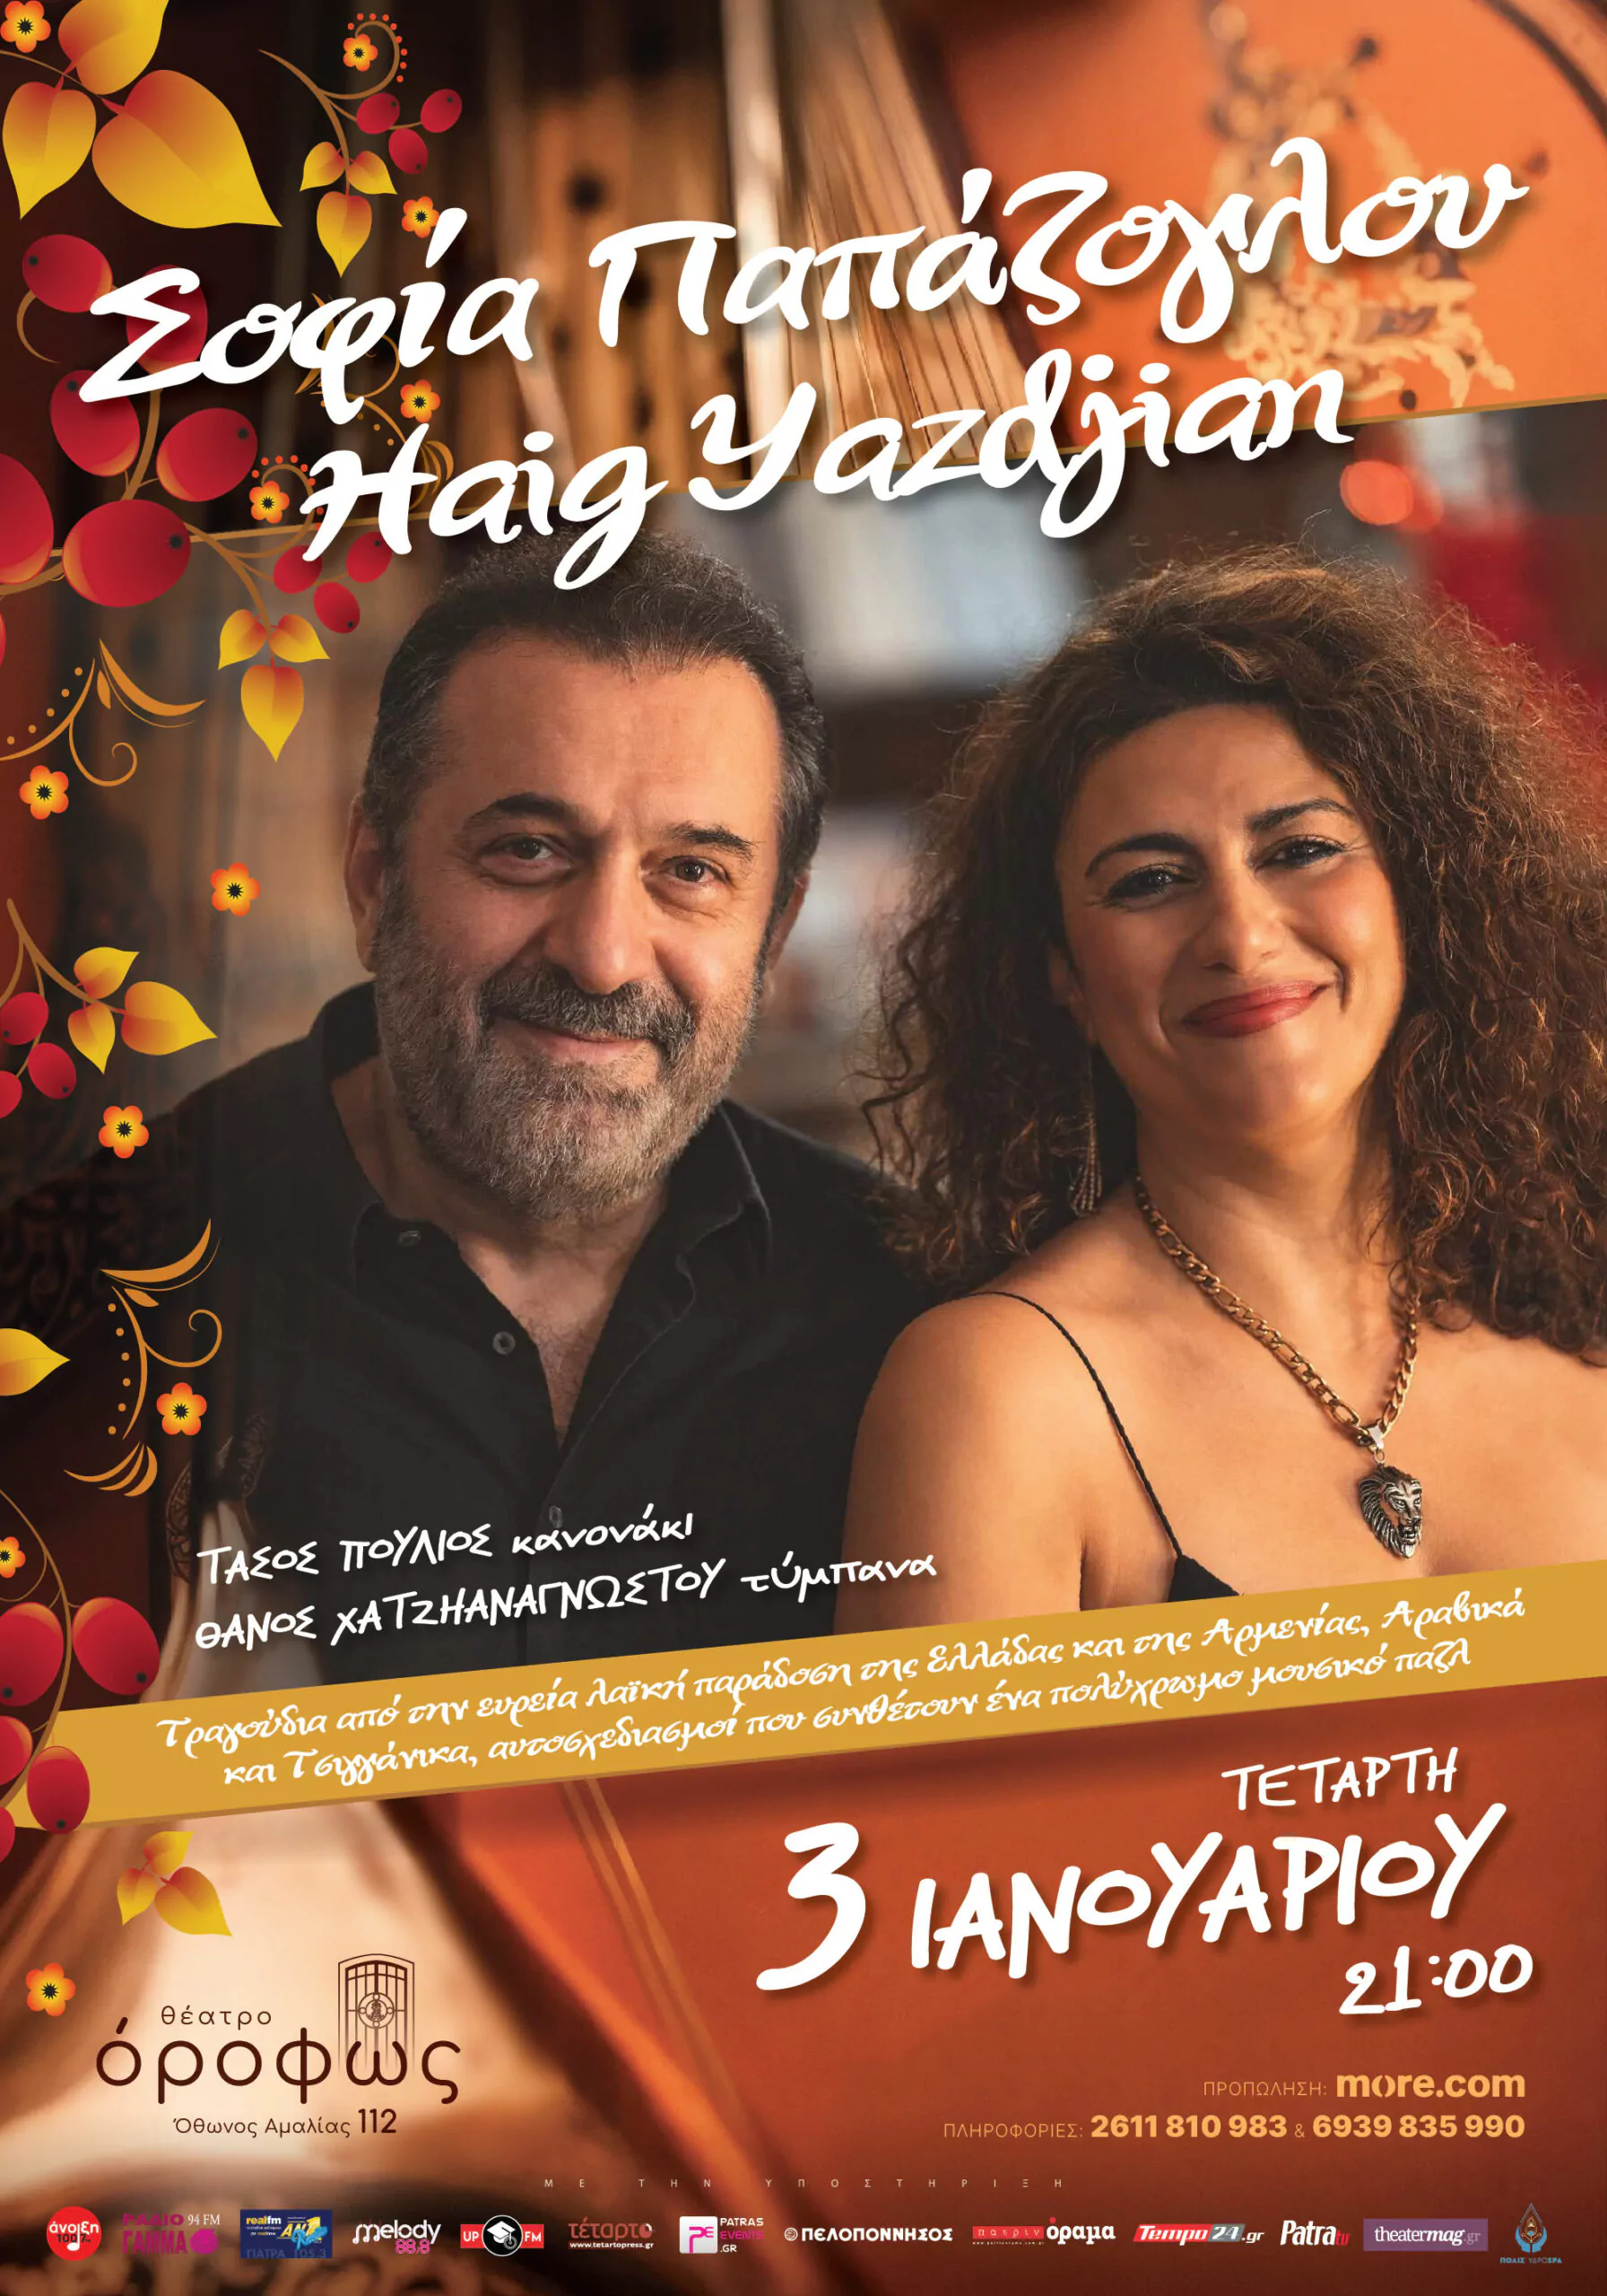 Σοφία Παπάζογλου & Haig Yazdjian για μία μοναδική παράσταση στο θέατρο «όροφως», στην Πάτρα